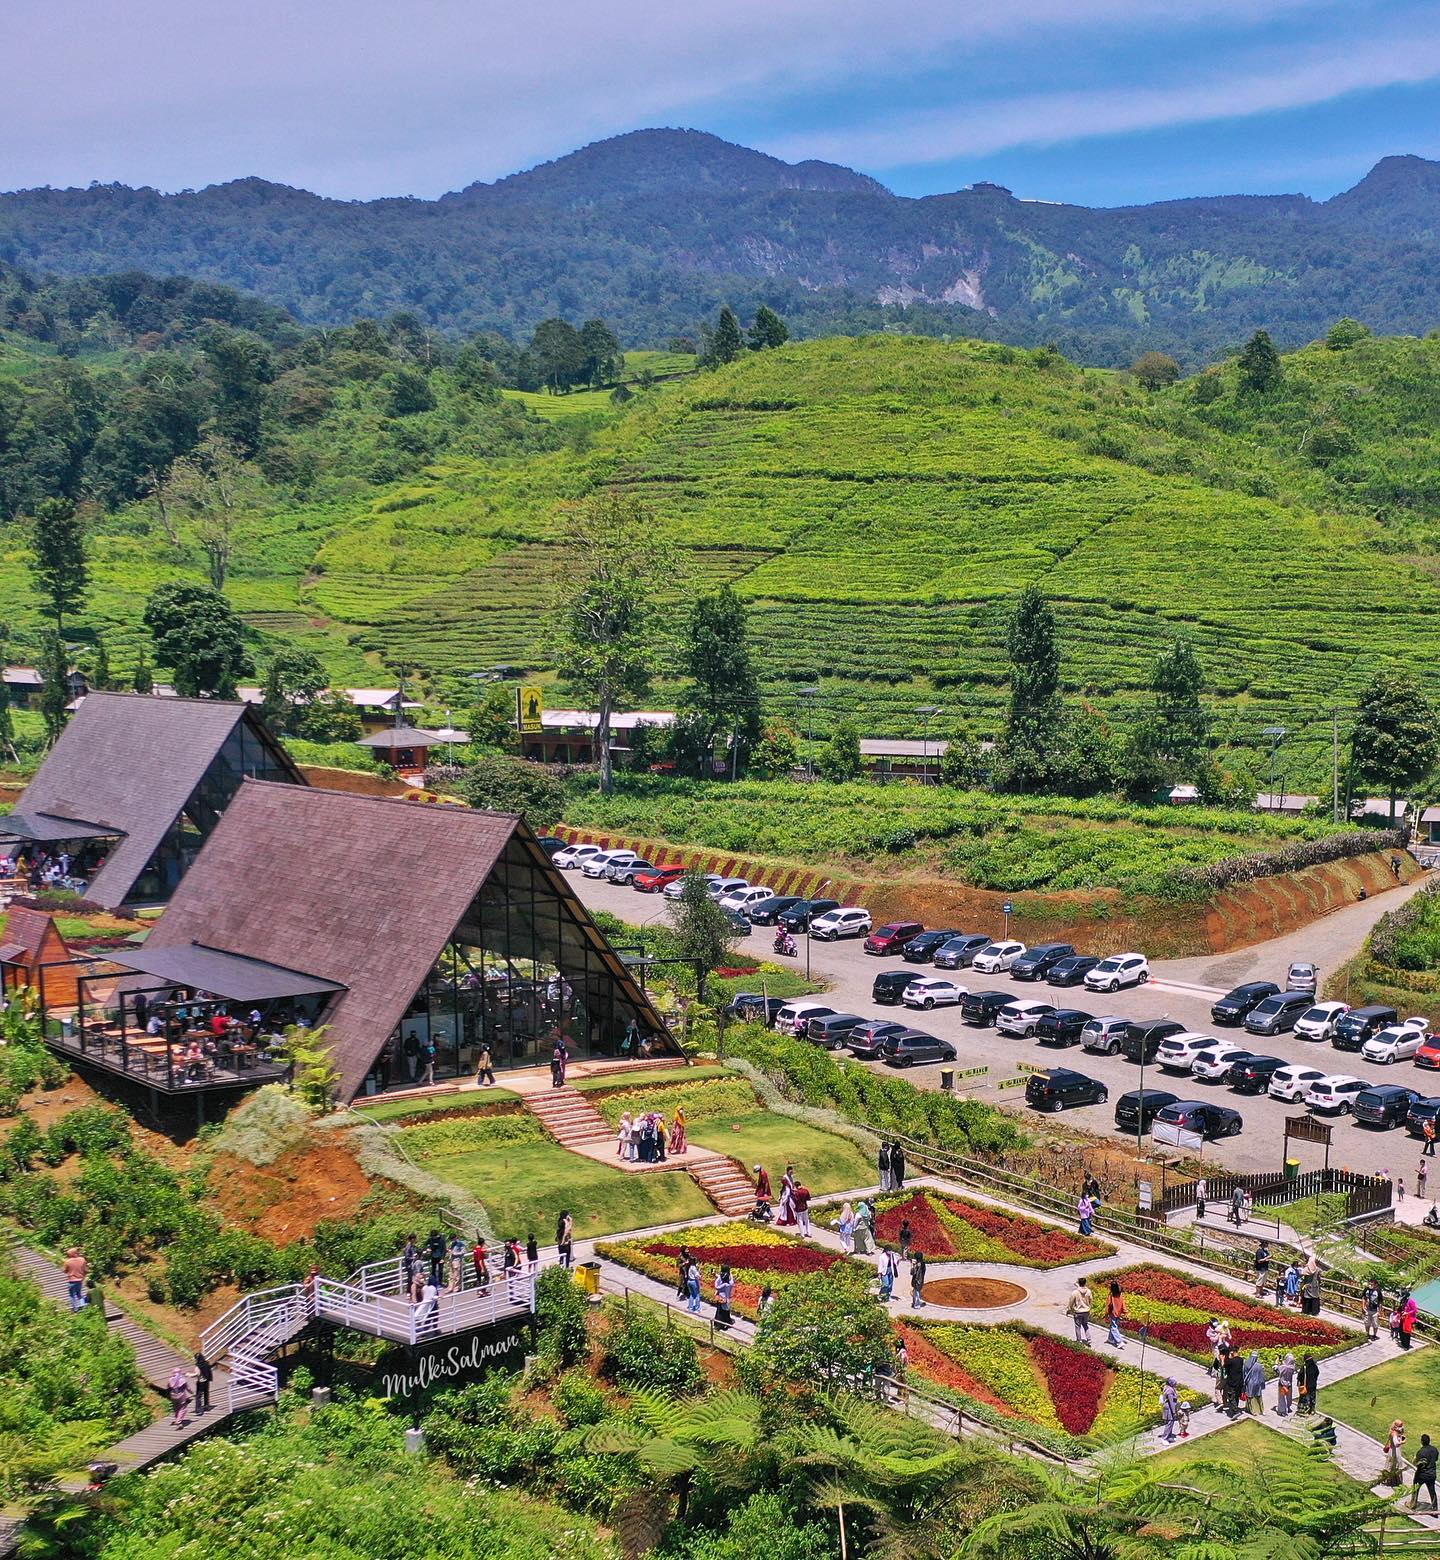 Lokasi The Ranch Ciater Subang Image From @mulkisalman